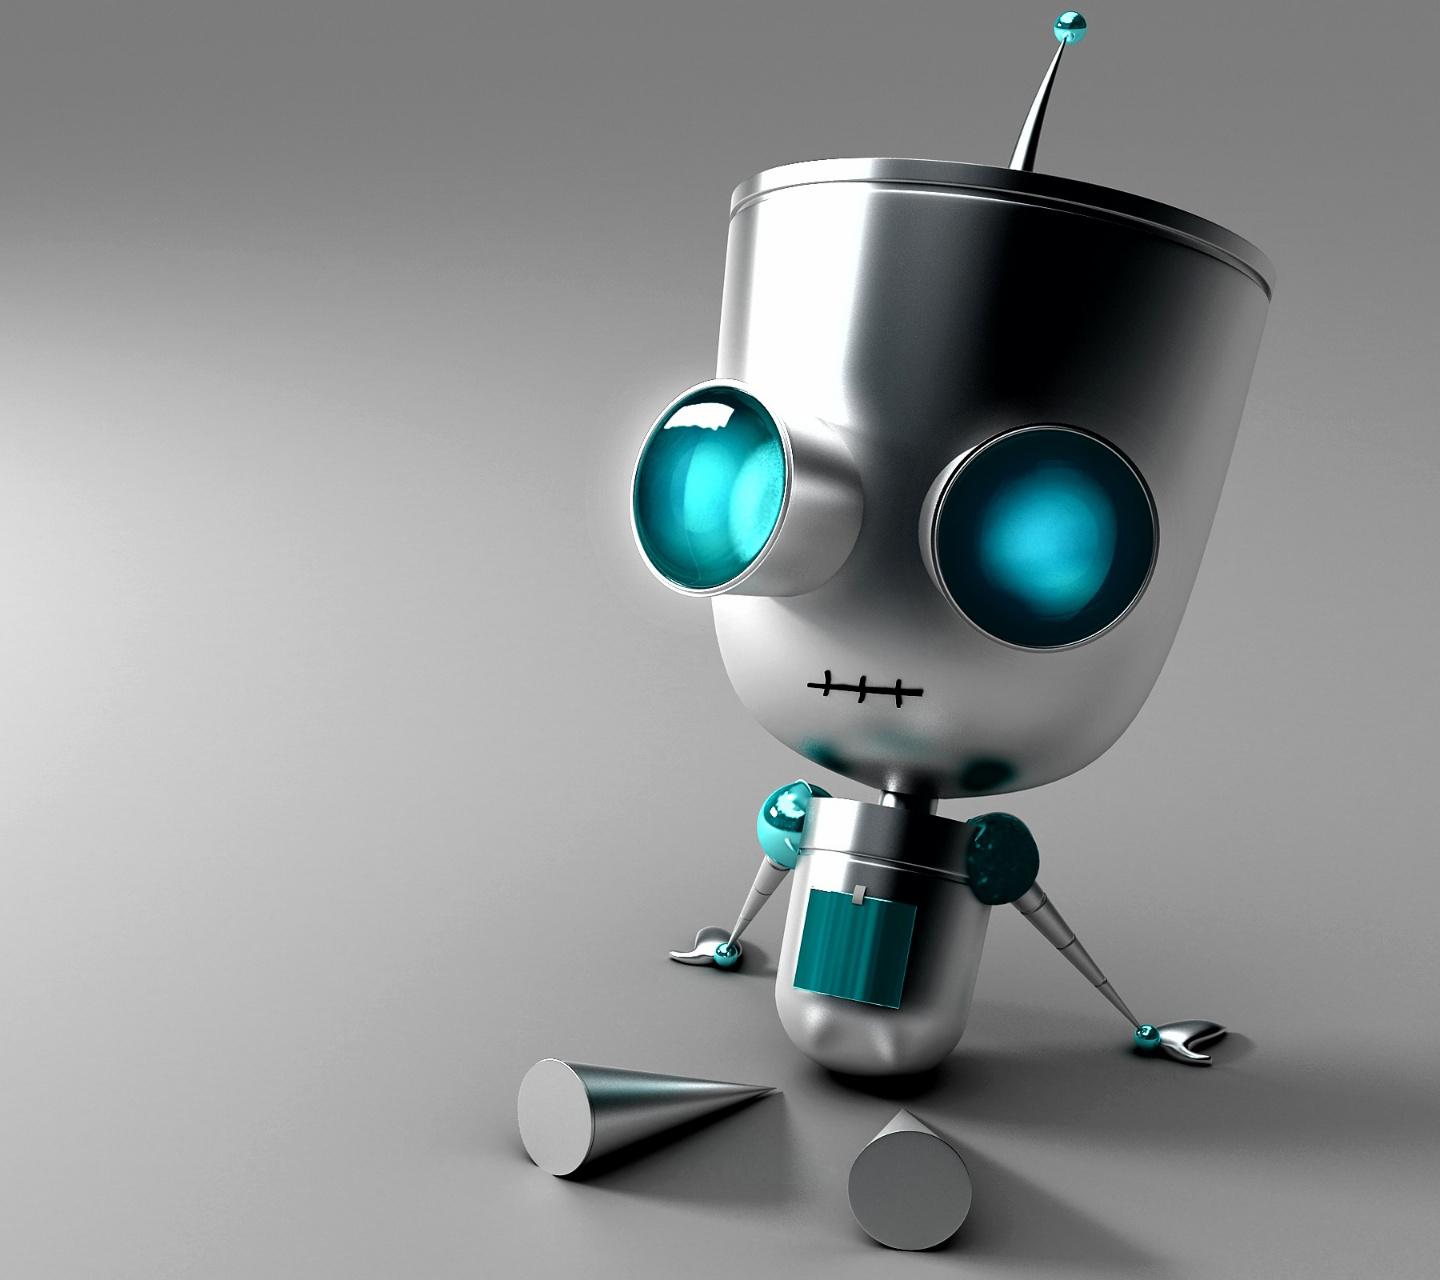 cute robot